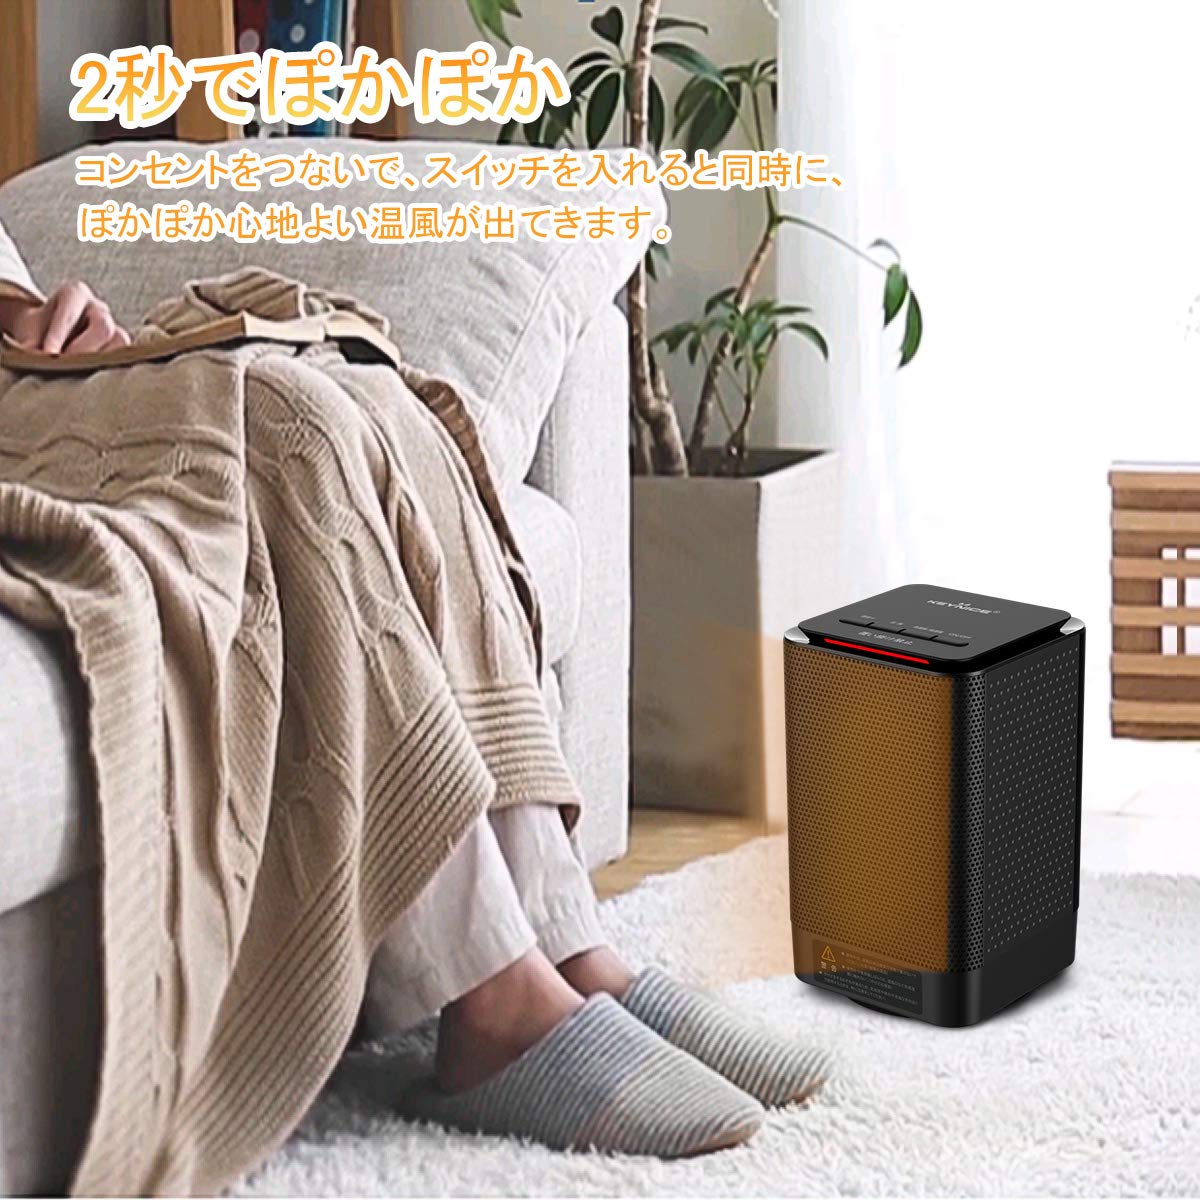 最新款 日本必買 KEYNICE 小型 電暖爐 加熱器 風扇 擺動 陶瓷加熱器 電暖爐 3檔轉換 速暖 小型 腳底 暖腳器 節能 加熱器具 寒流必備 日本必買代購